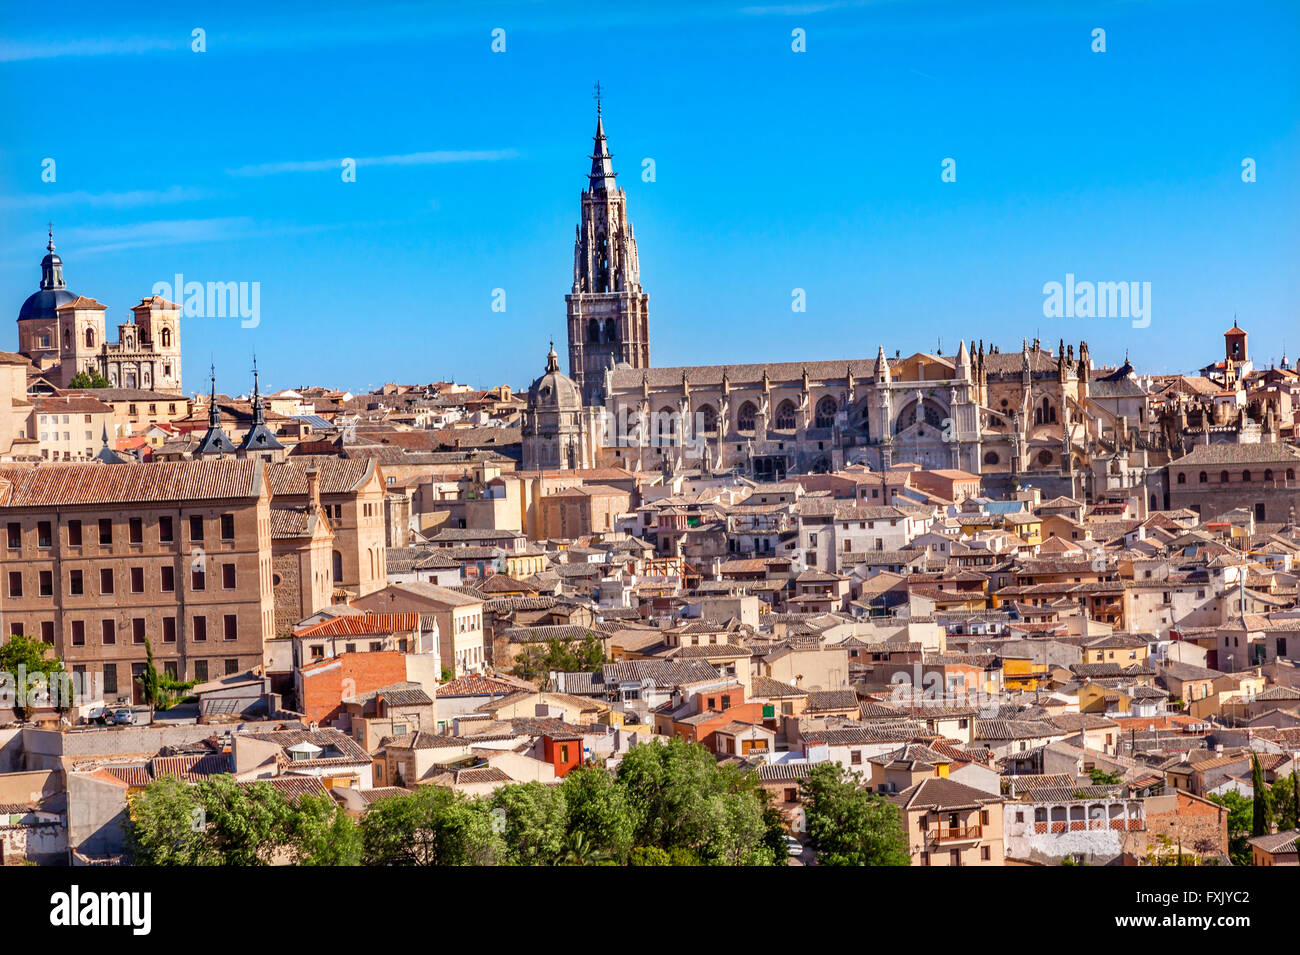 Las iglesias catedrales de la ciudad medieval de Toledo, España. Catedral empezó en 1226 terminado 1493 Foto de stock